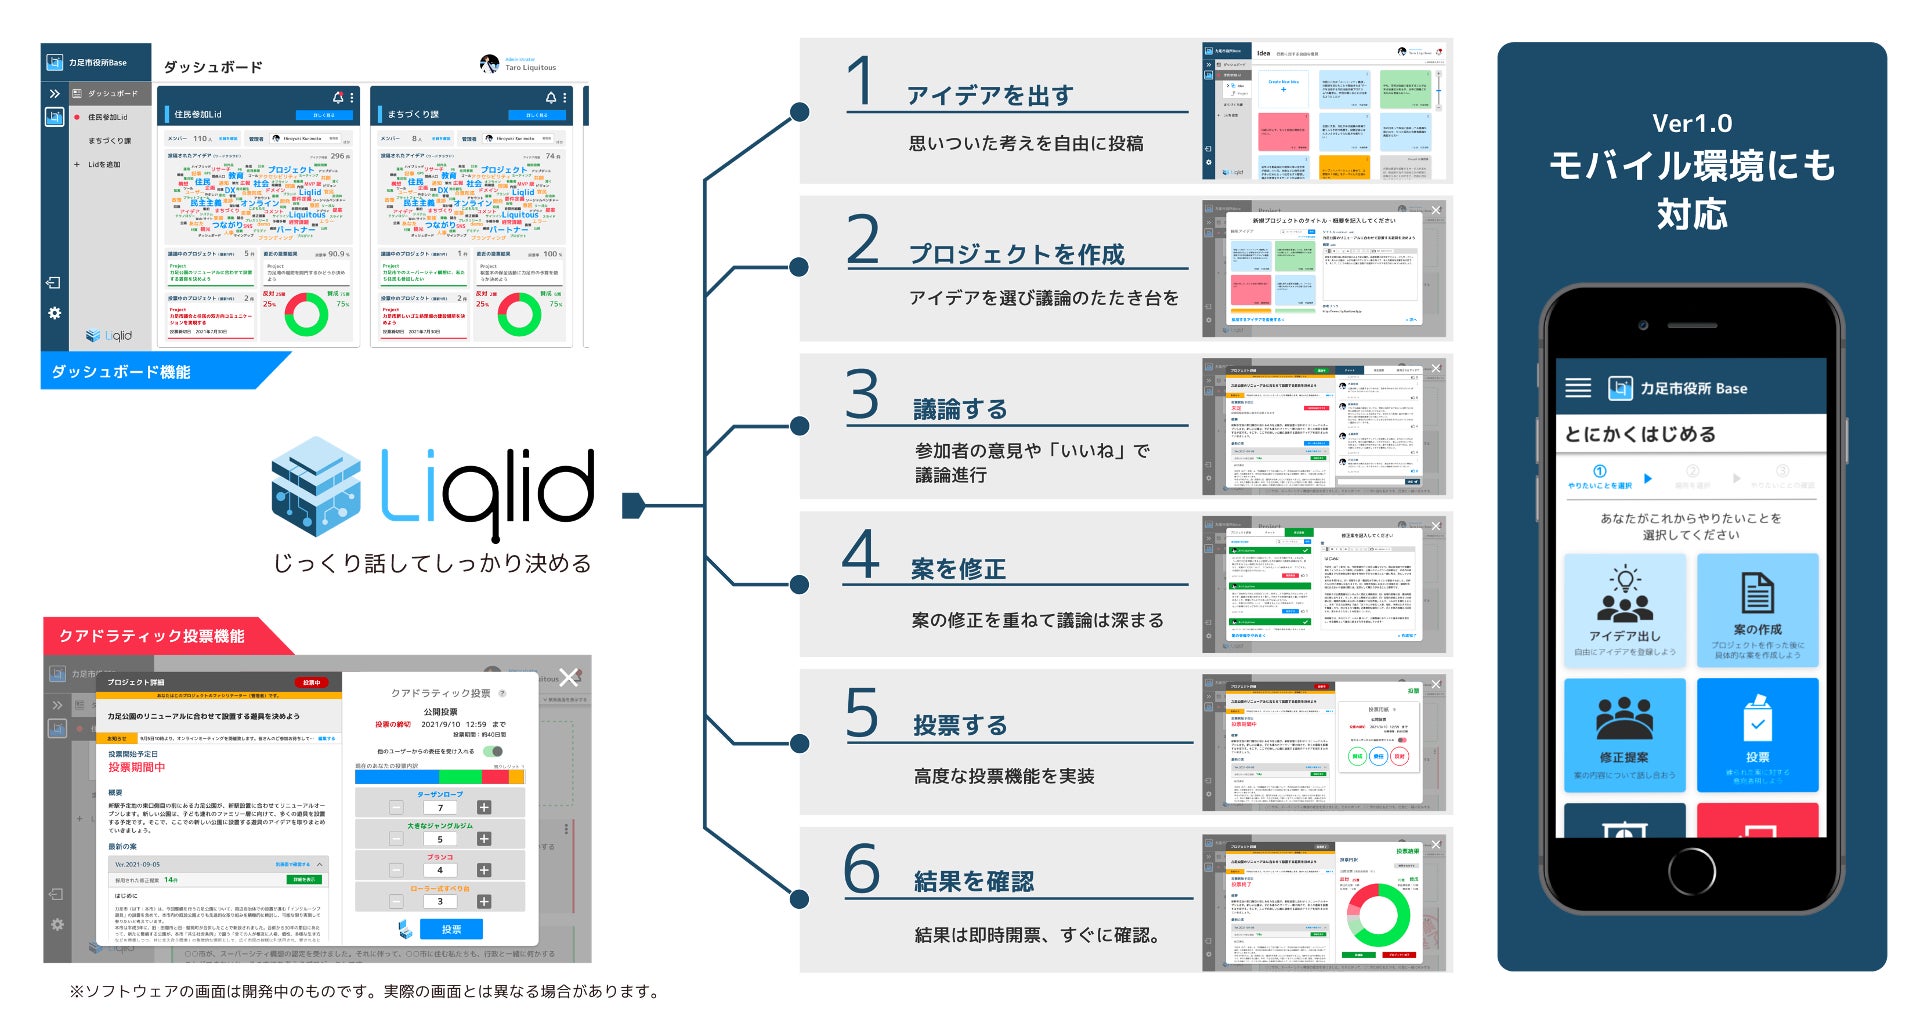 Liquitous、高知県日高村「健康アプリ開発事業」において、Liqlid搭載のクアドラティック投票などを用いた住民ニーズの集約を実施のサブ画像2